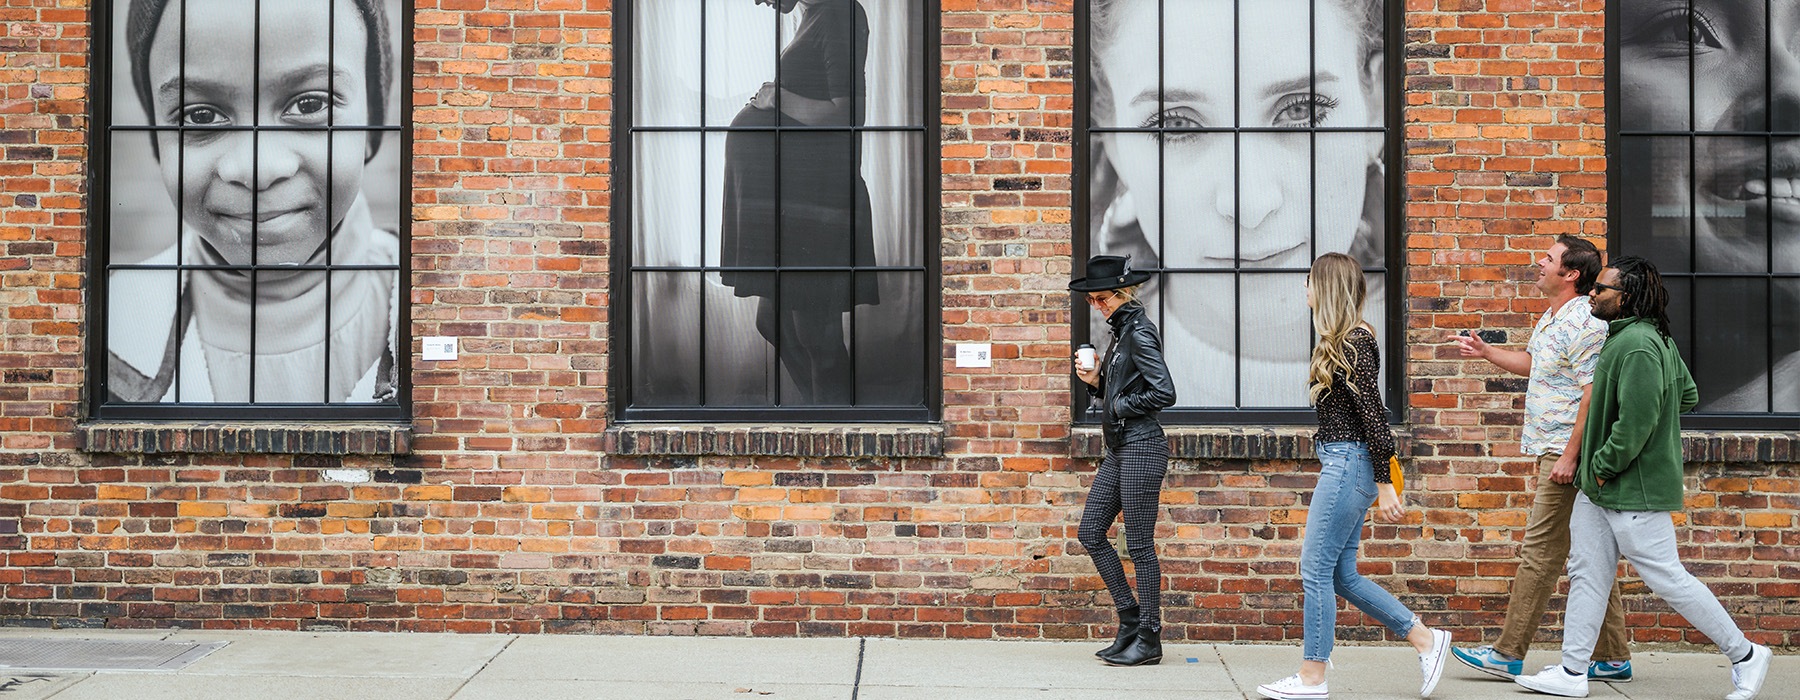 people walking down a sidewalk with art